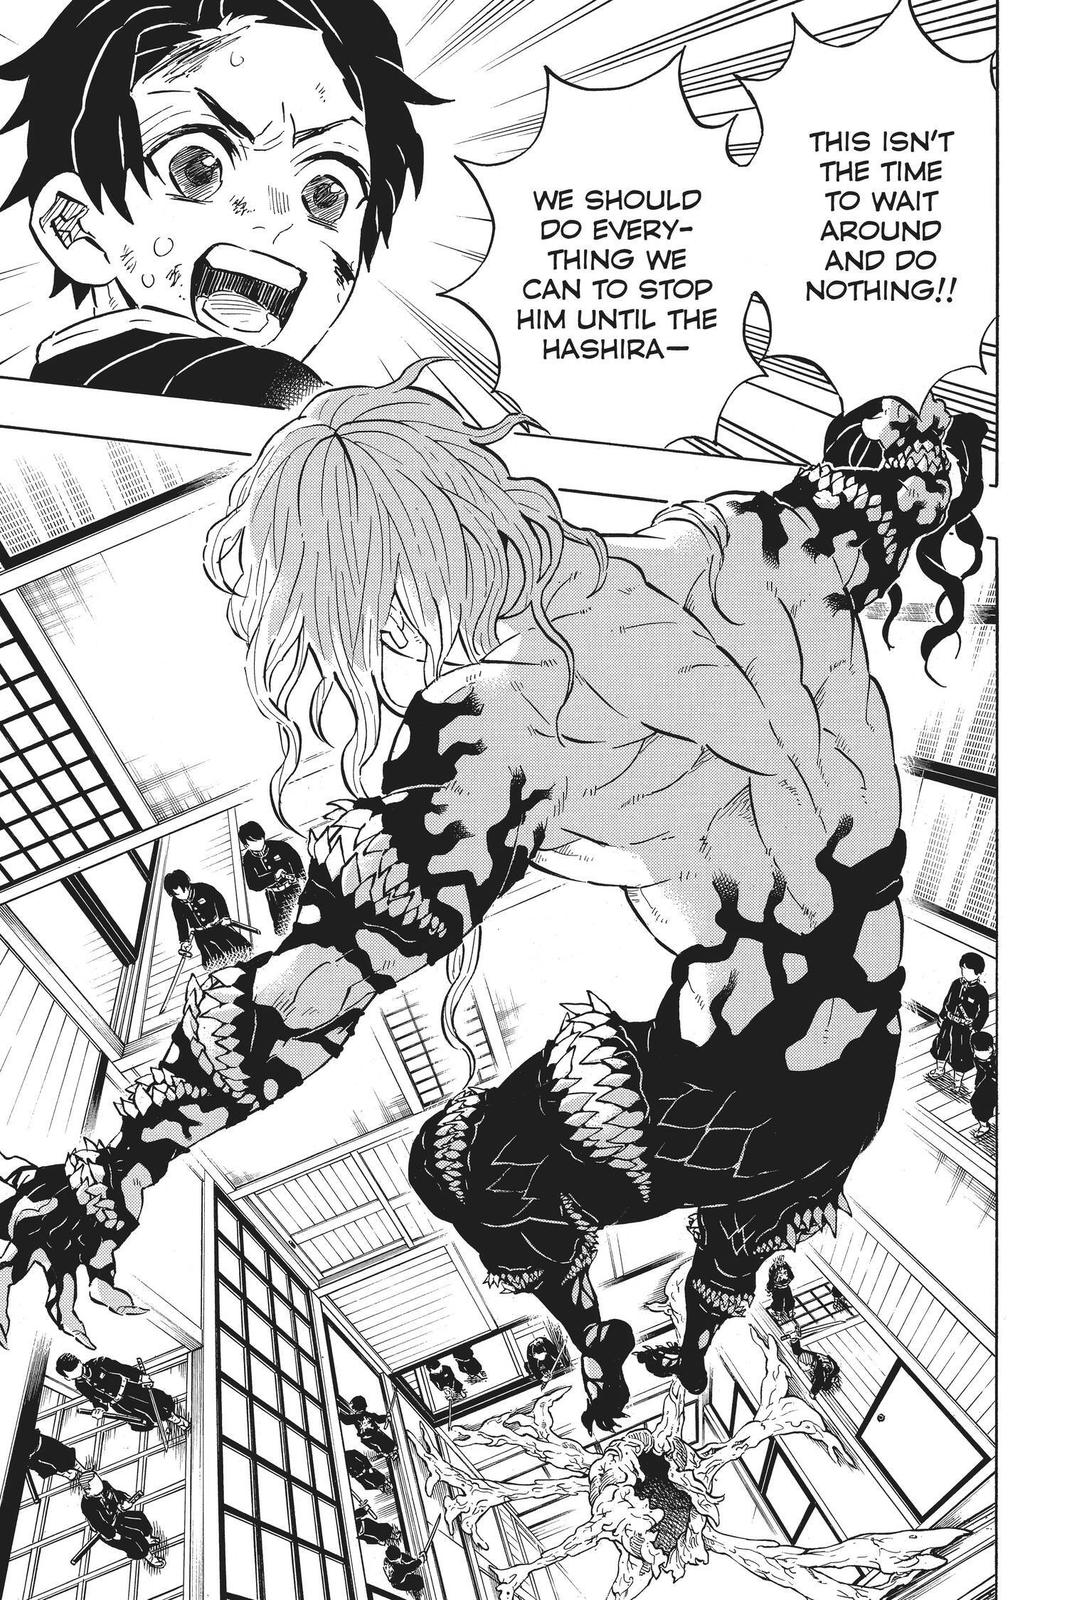 Demon Slayer Manga Manga Chapter - 180 - image 7